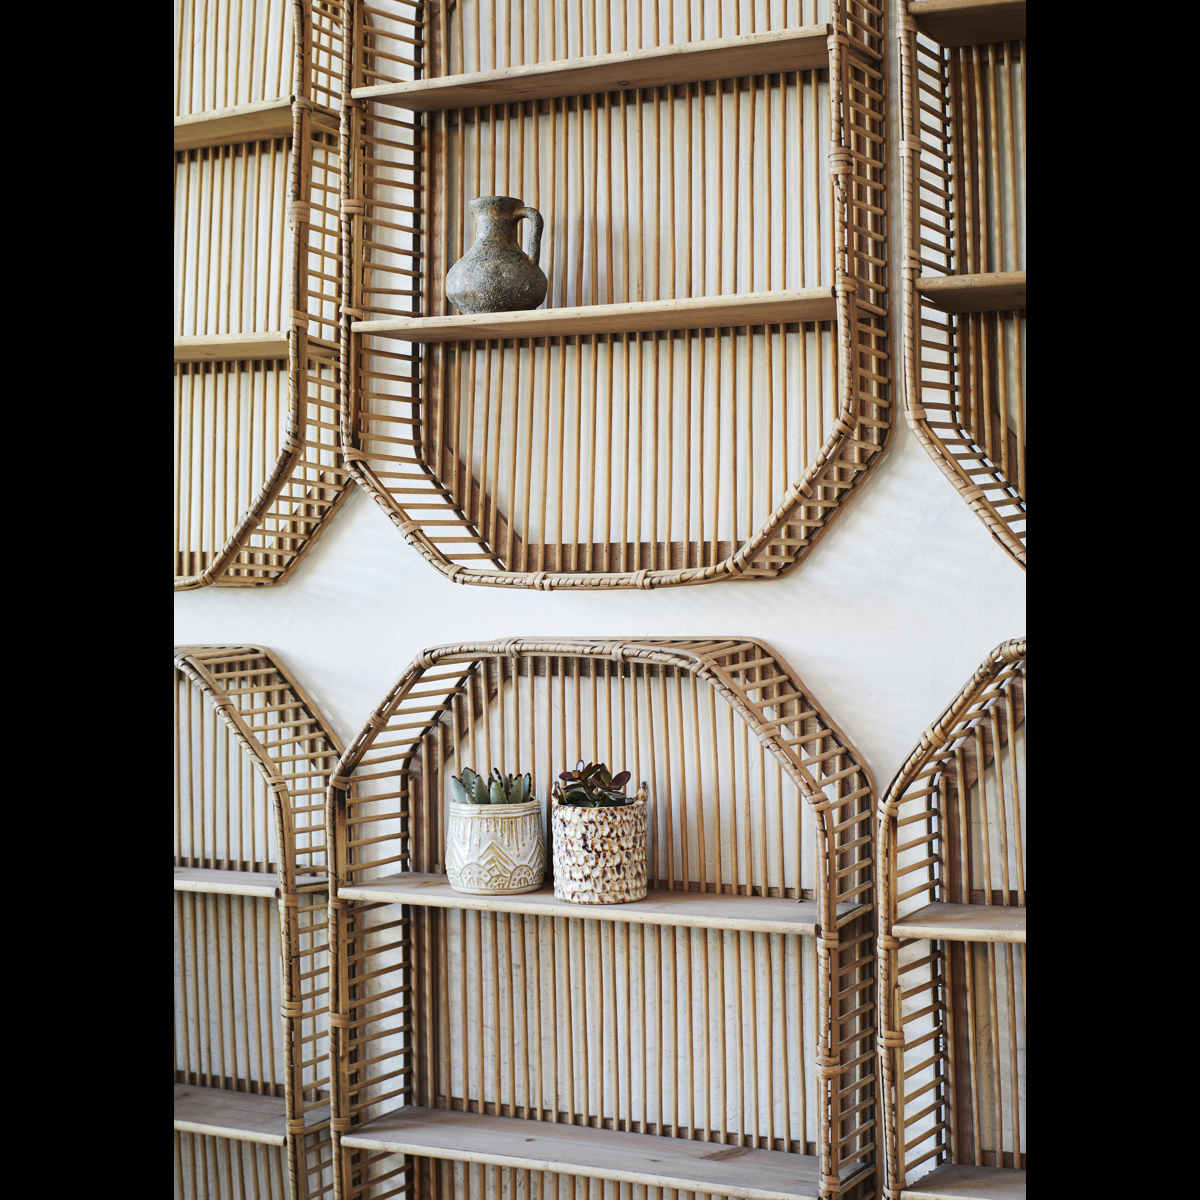 Rectangular bamboo shelf